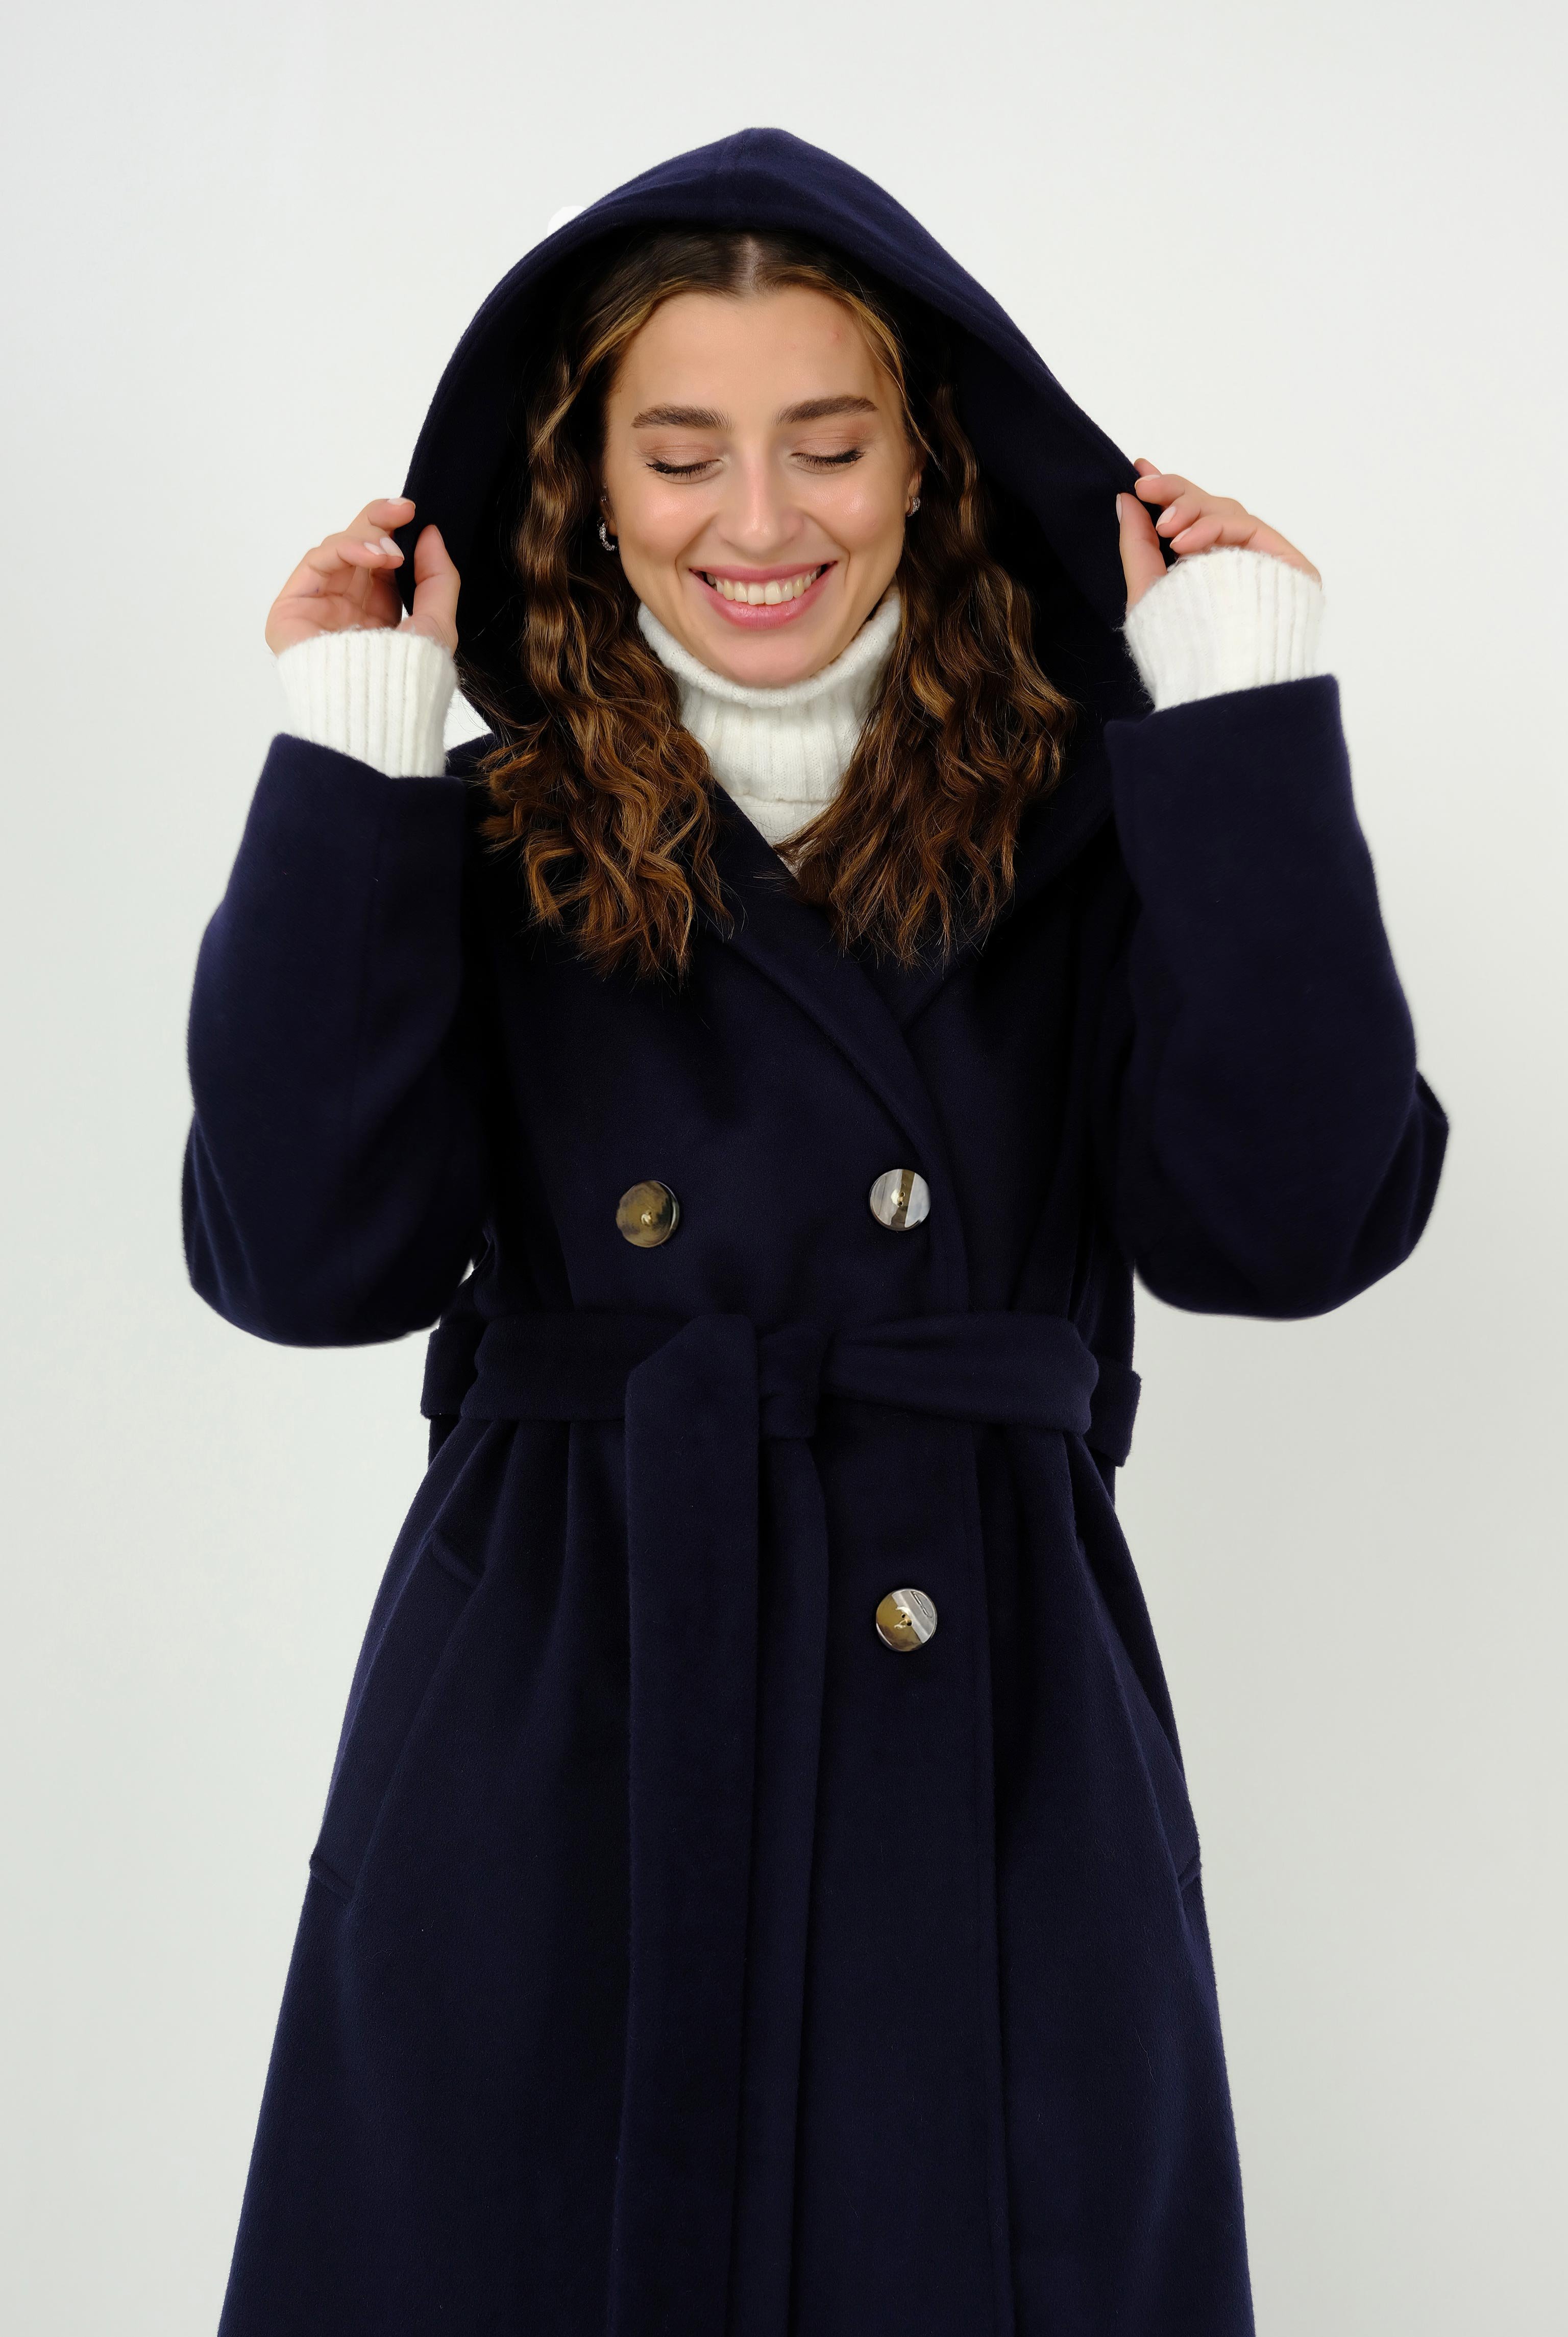 Hooded Fleece Coat Navy Blue 